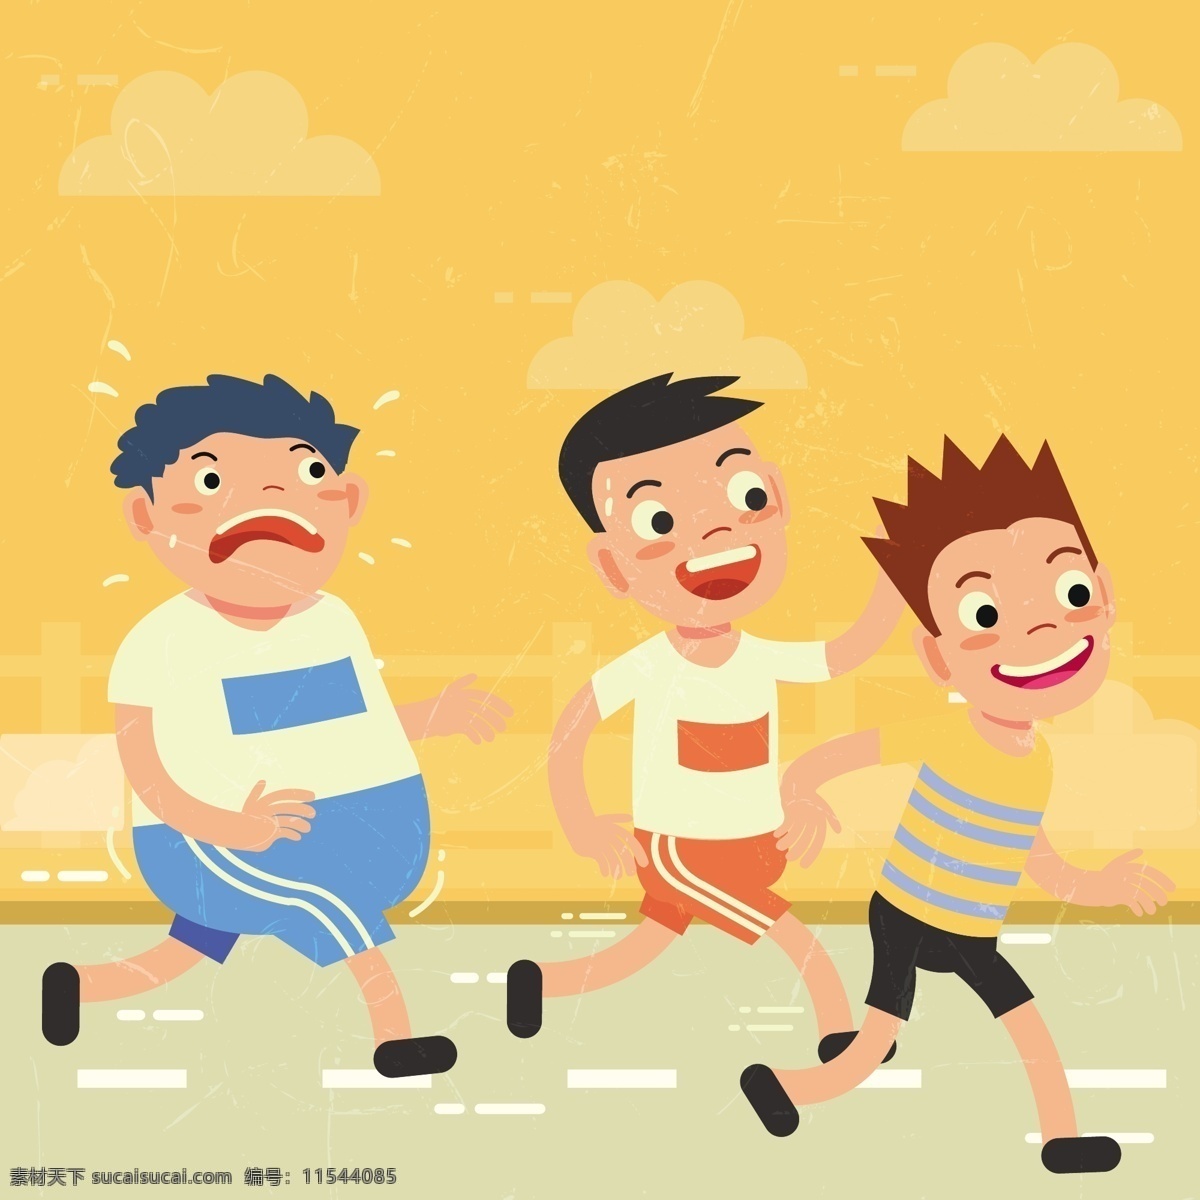 健康 运动 集体 跑步 矢量 减肥 矢量素材 小孩 孩子 马路